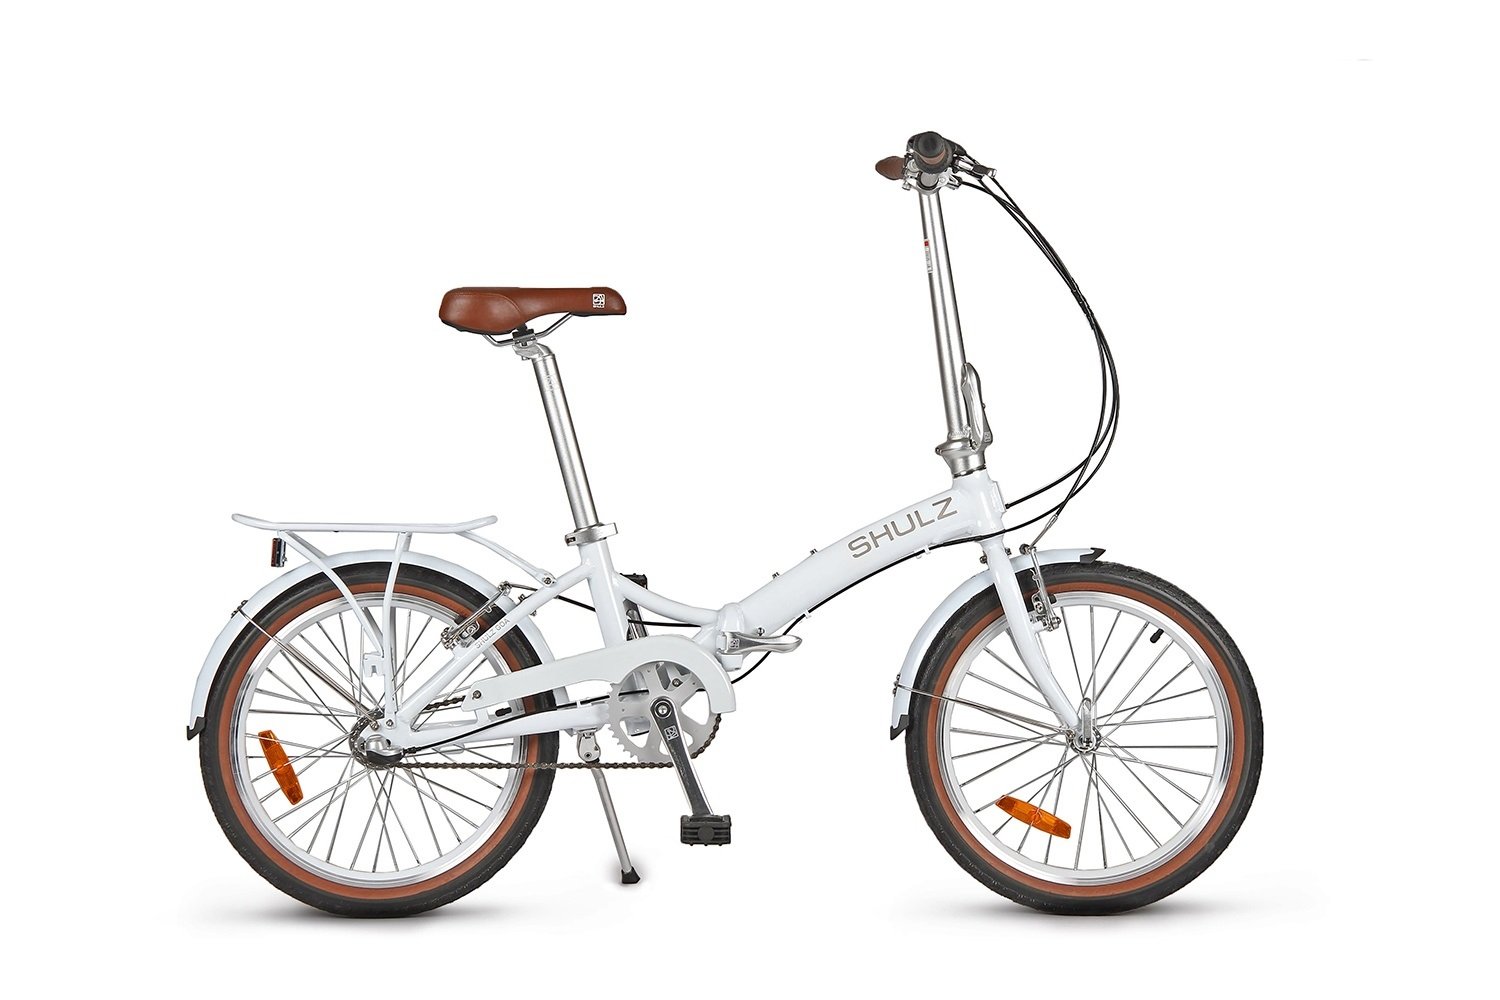 Складной велосипед SHULZ GOA V '16 складной белый, 2021, 16GVWH горный велосипед stinger element pro 26 microshift год 2021 ростовка 16